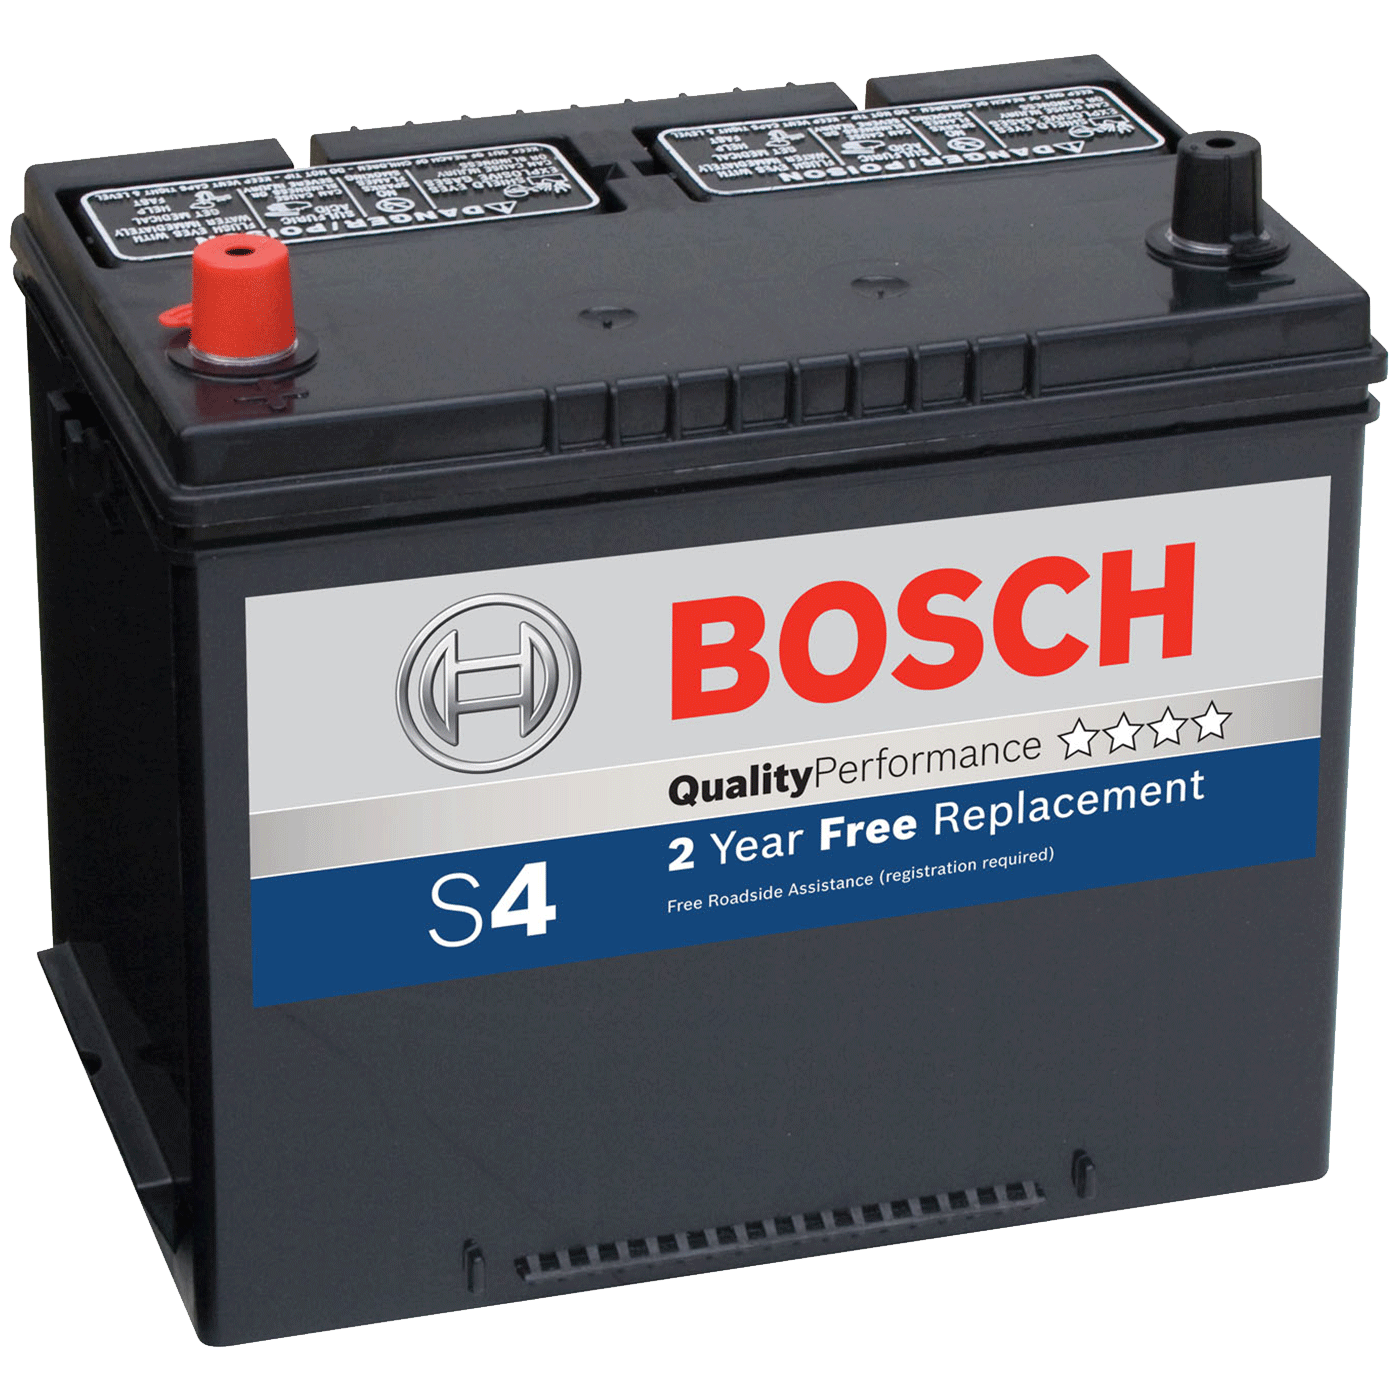 Bosch Automotive Batteries Transparent Background